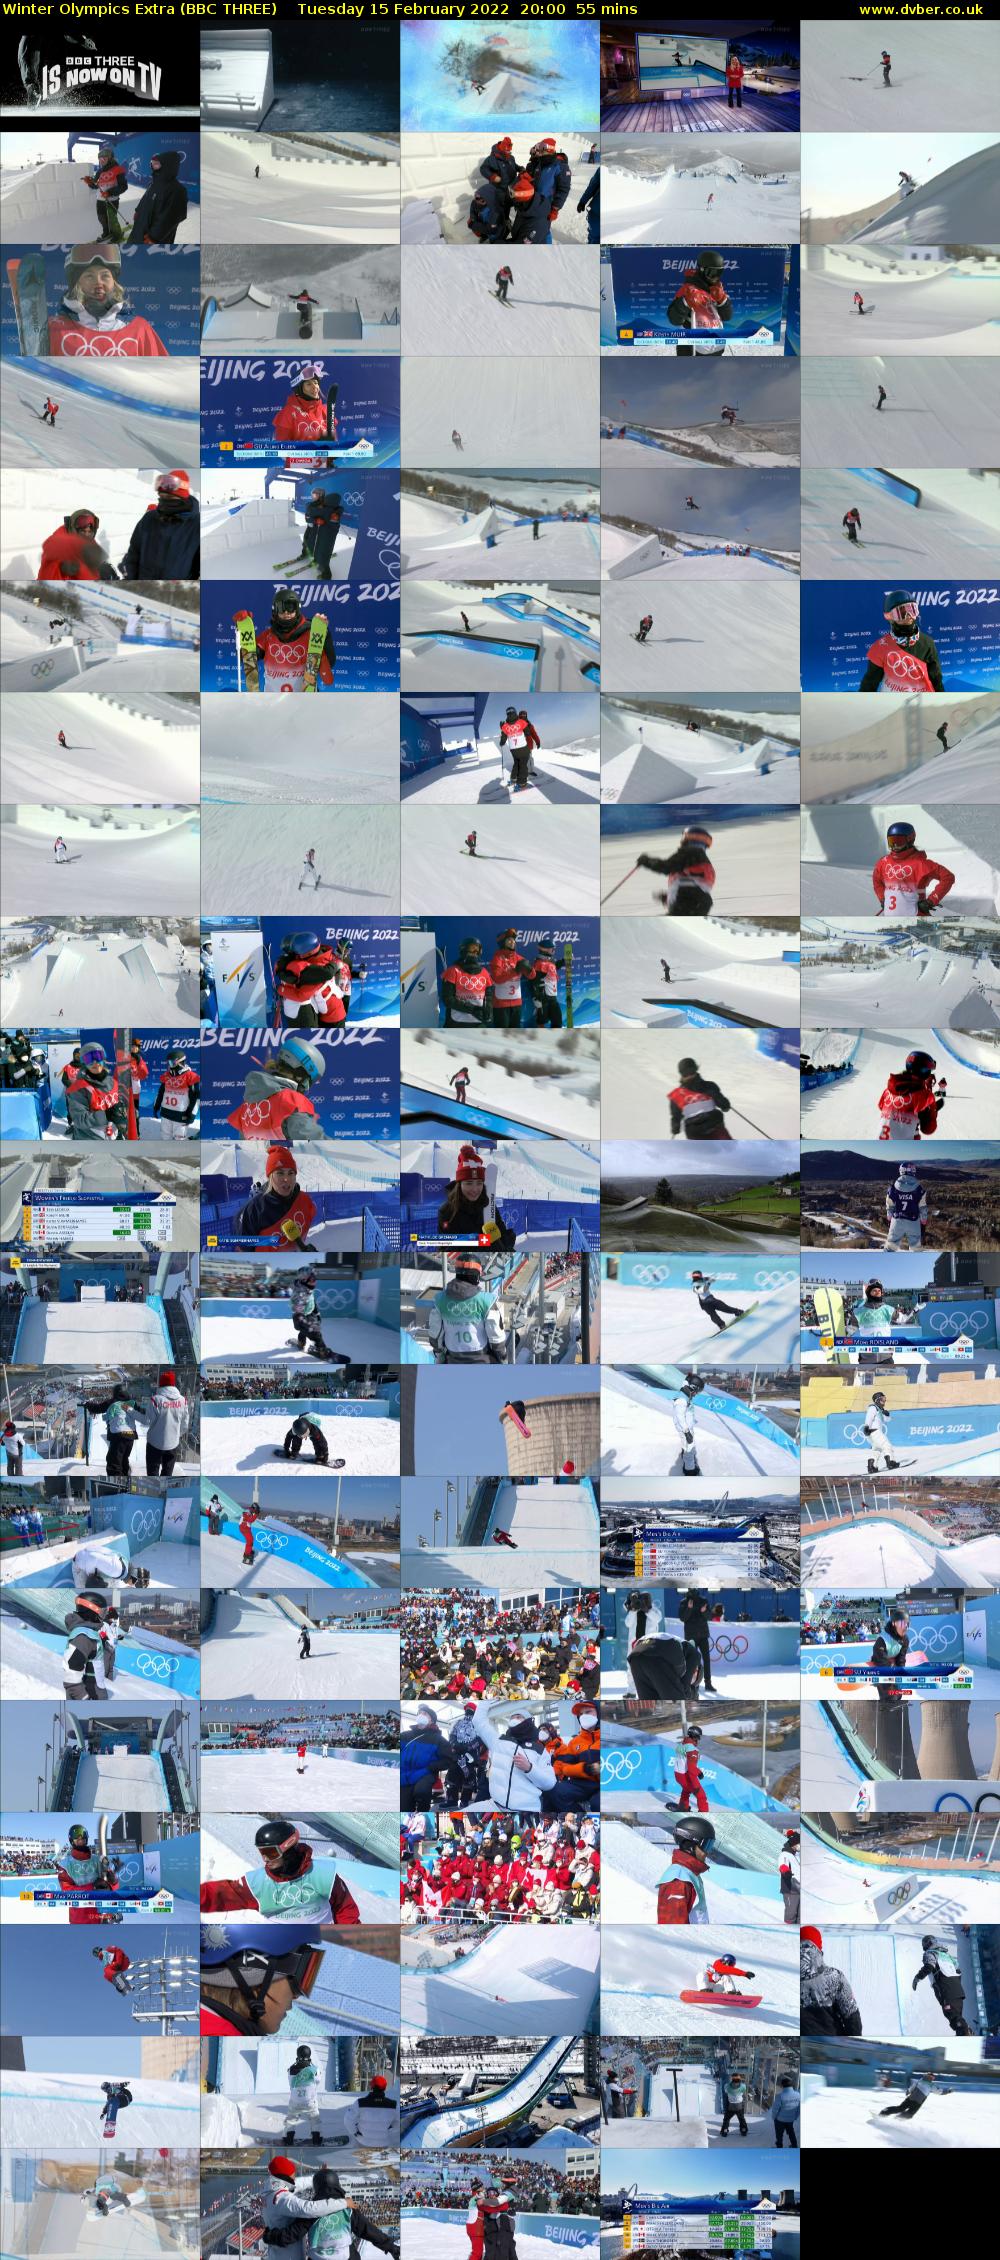 Winter Olympics Extra (BBC THREE) Tuesday 15 February 2022 20:00 - 20:55